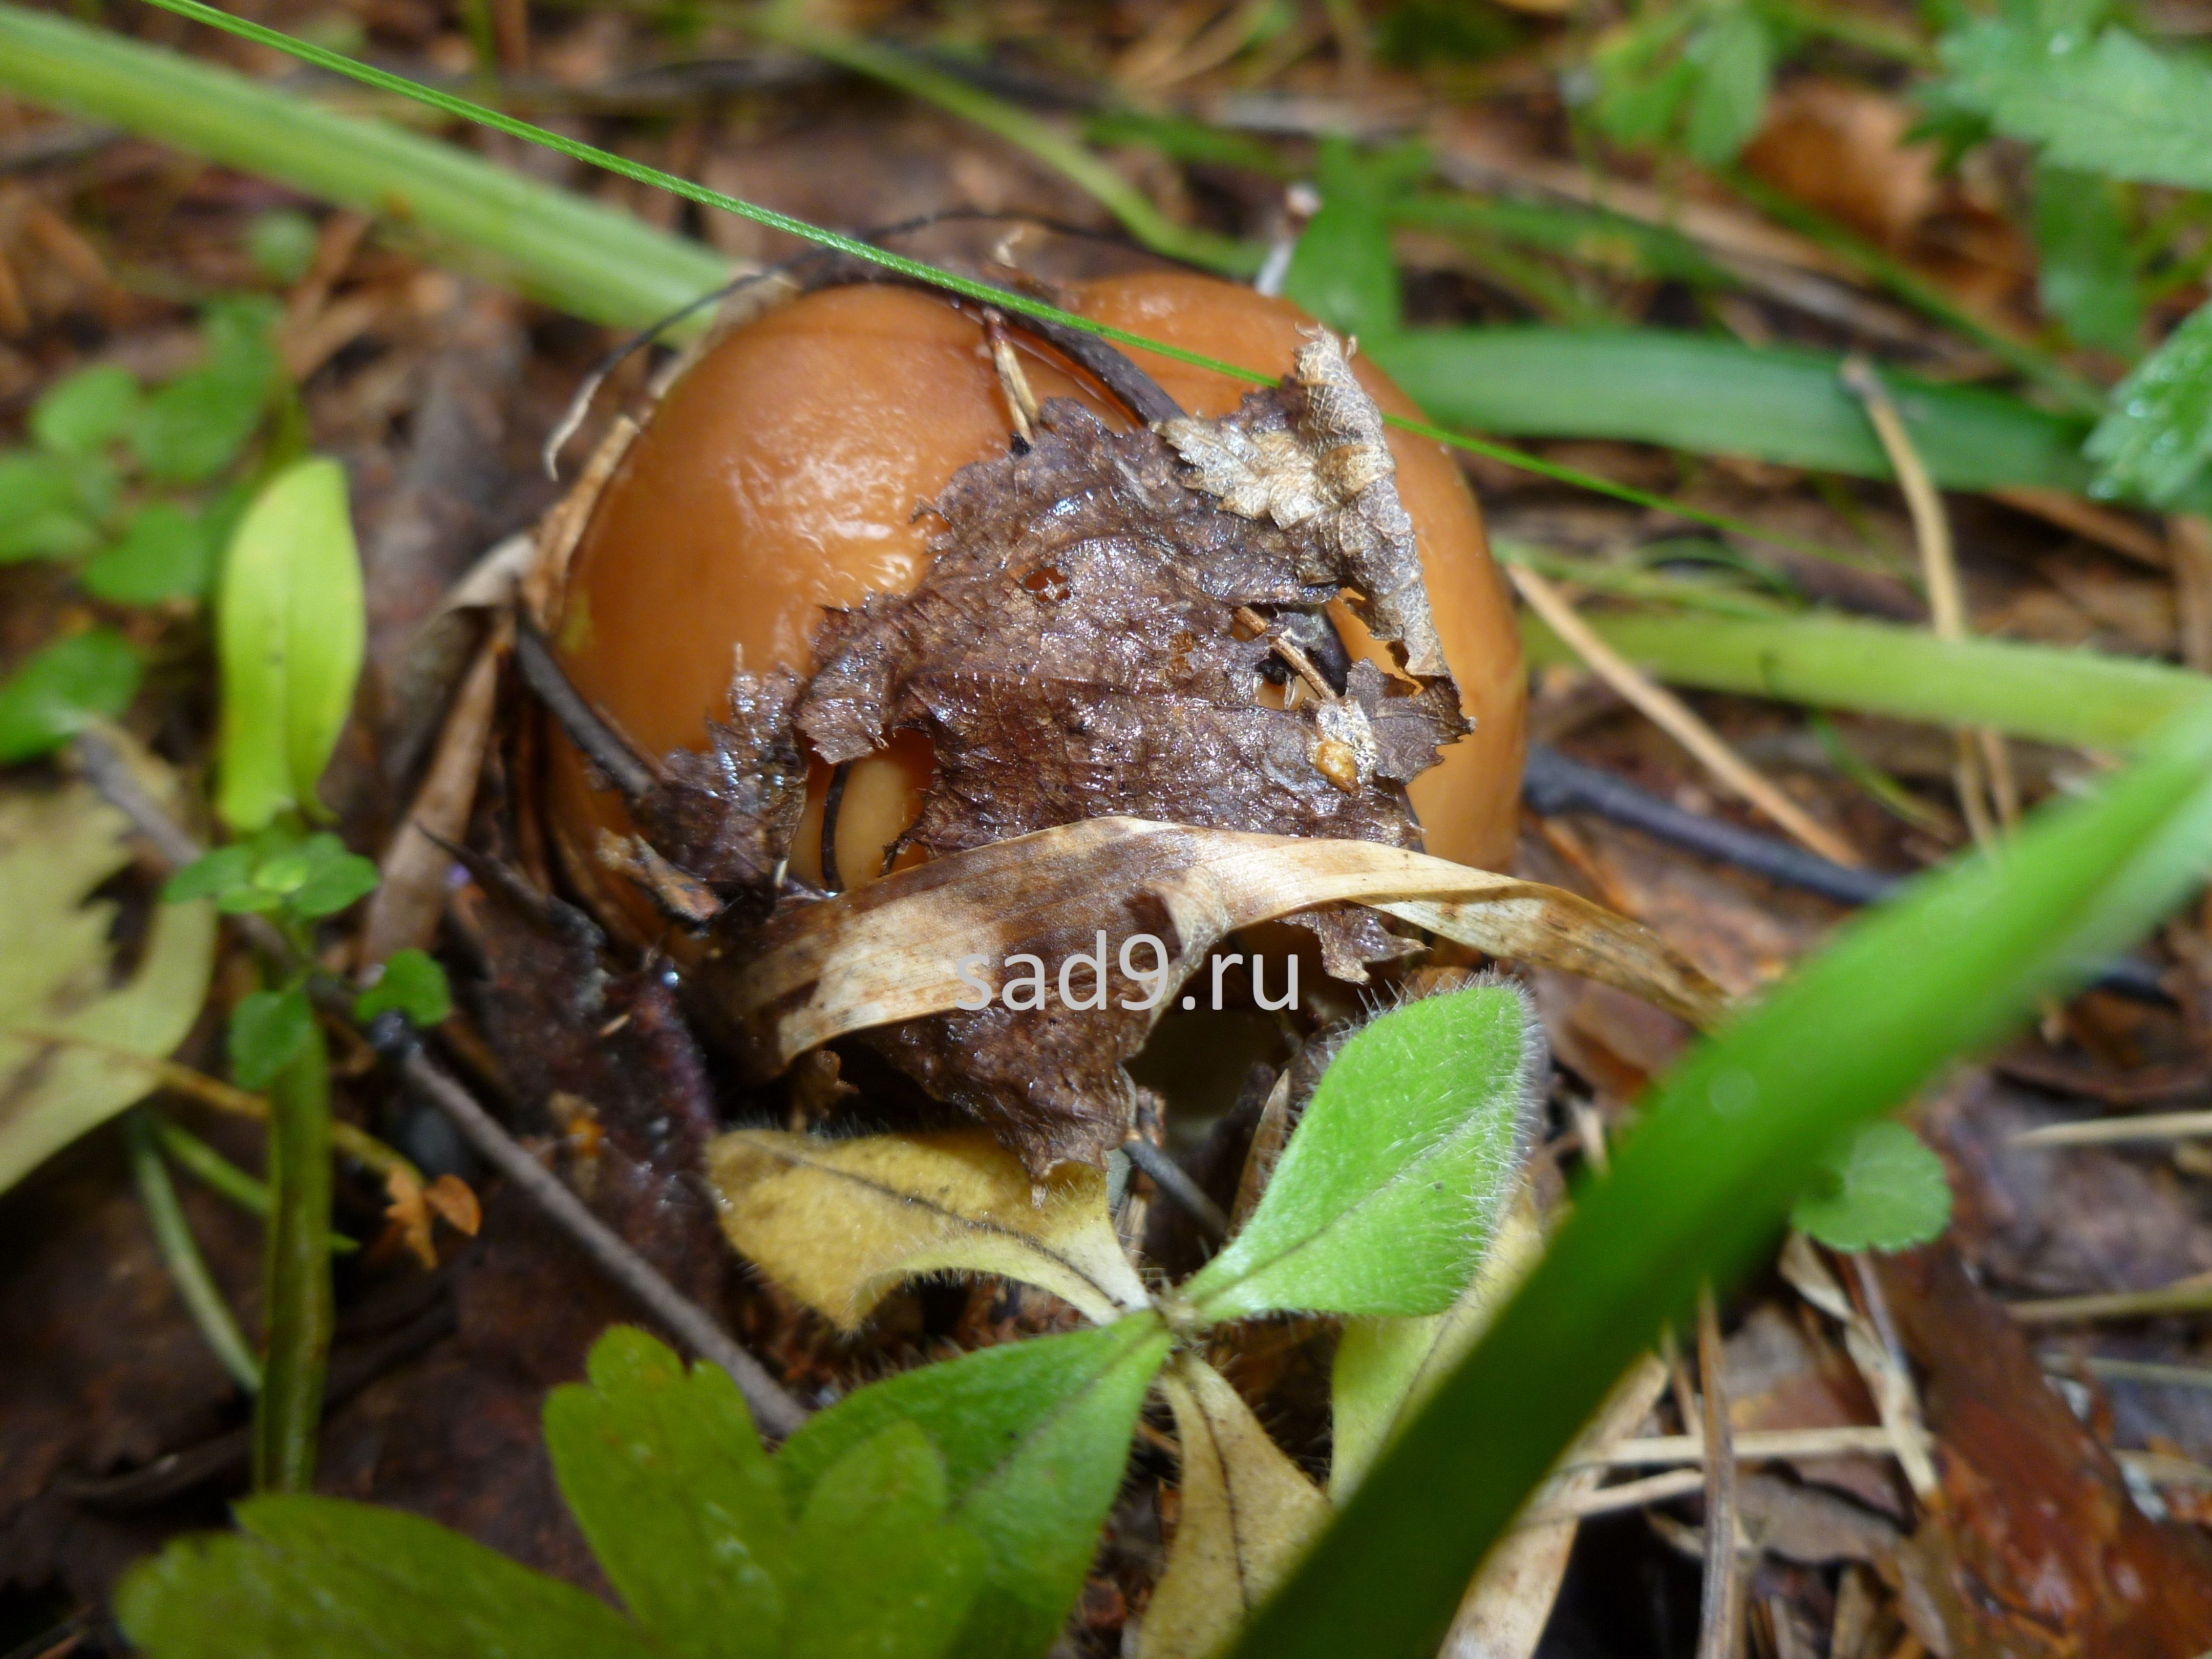 Название съедобных грибов - бычок